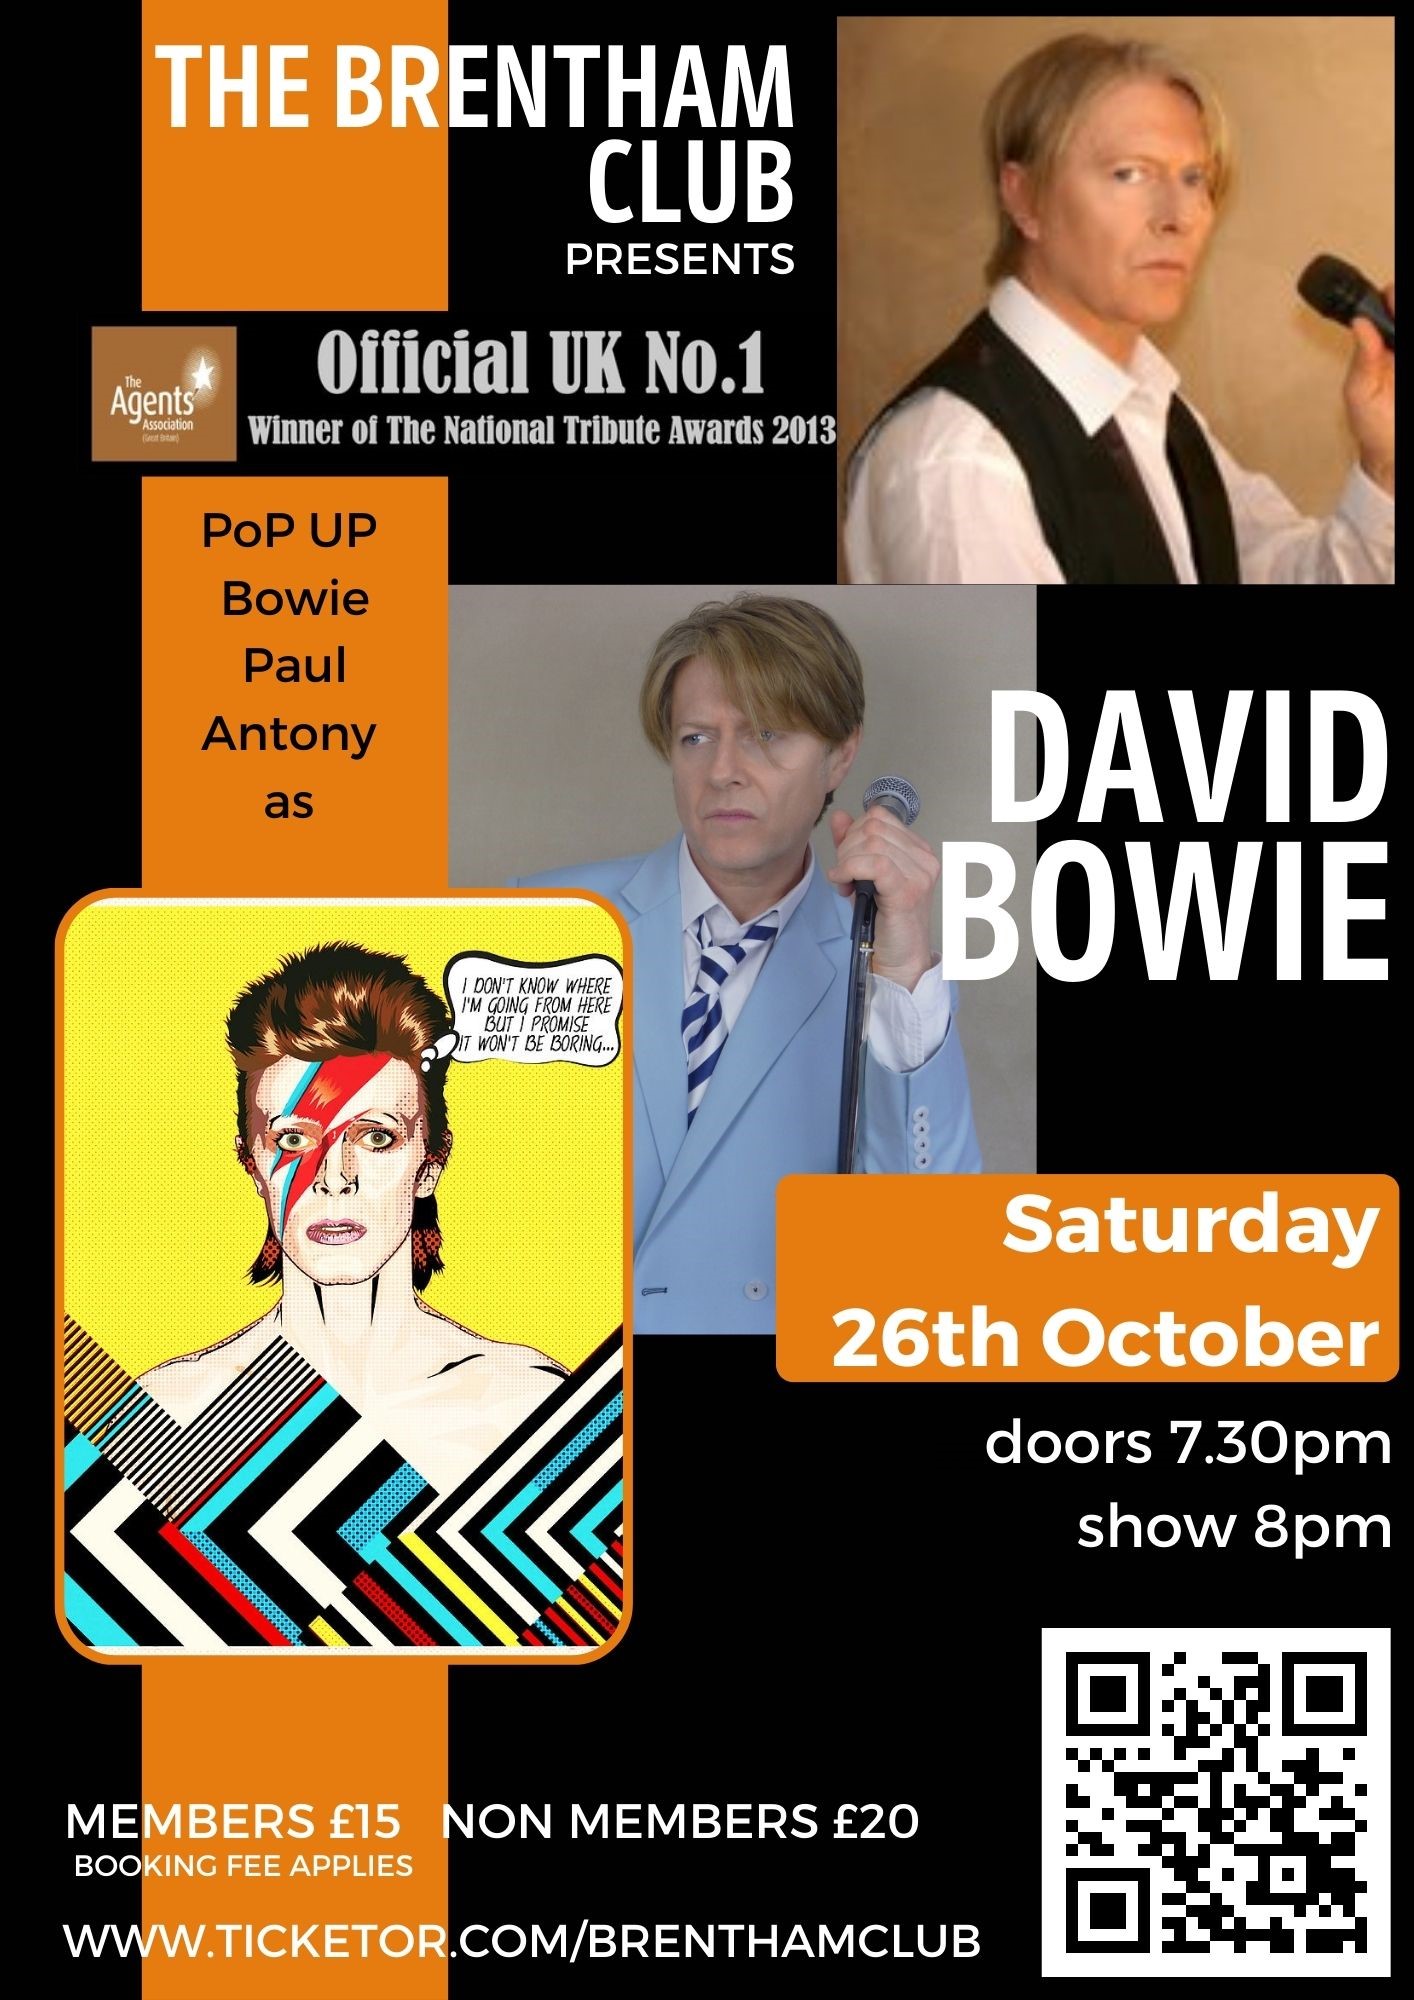 David Bowie Tribute  on oct. 26, 20:00@The Brentham Club - Achetez des billets et obtenez des informations surBrenthamclub.co.uk 